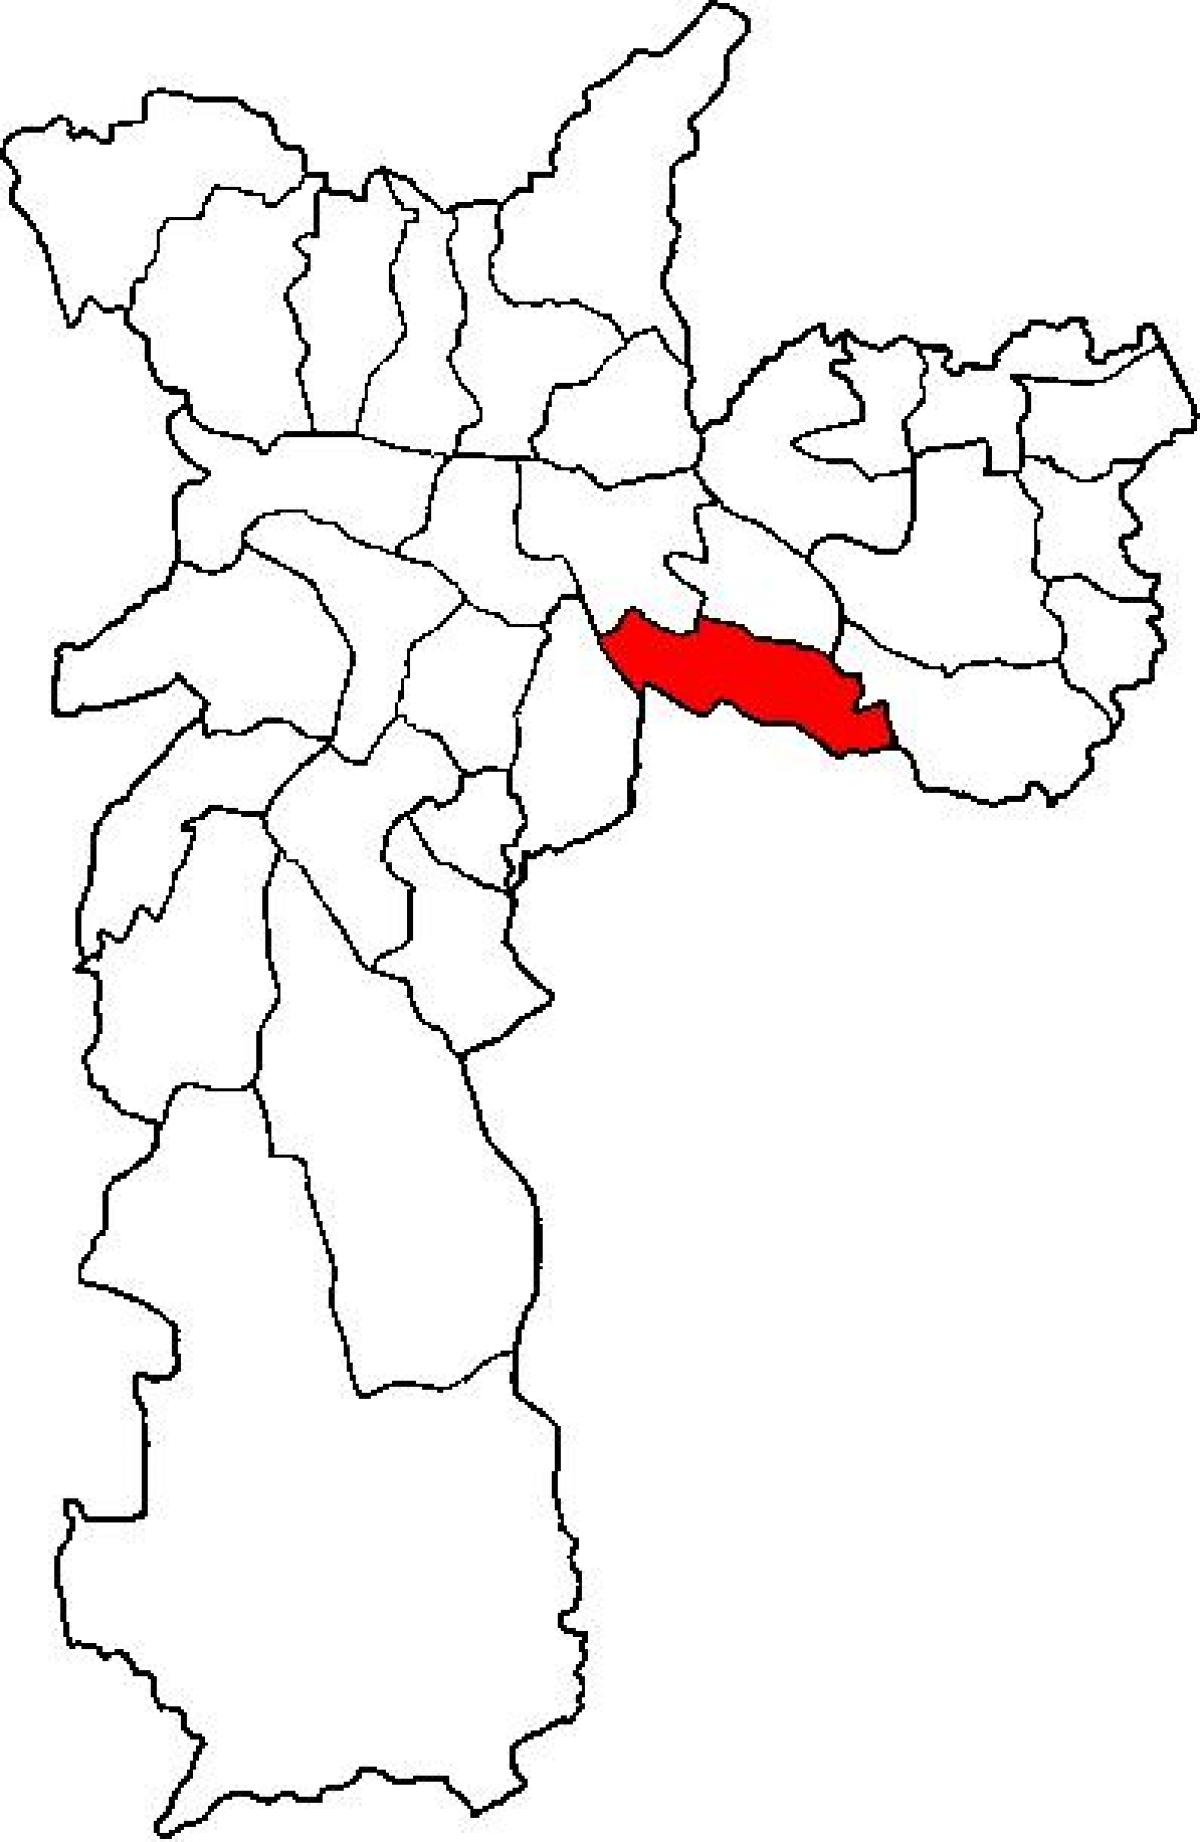 نقشہ کی ولا Prudente ذیلی صوبے ساؤ پالو